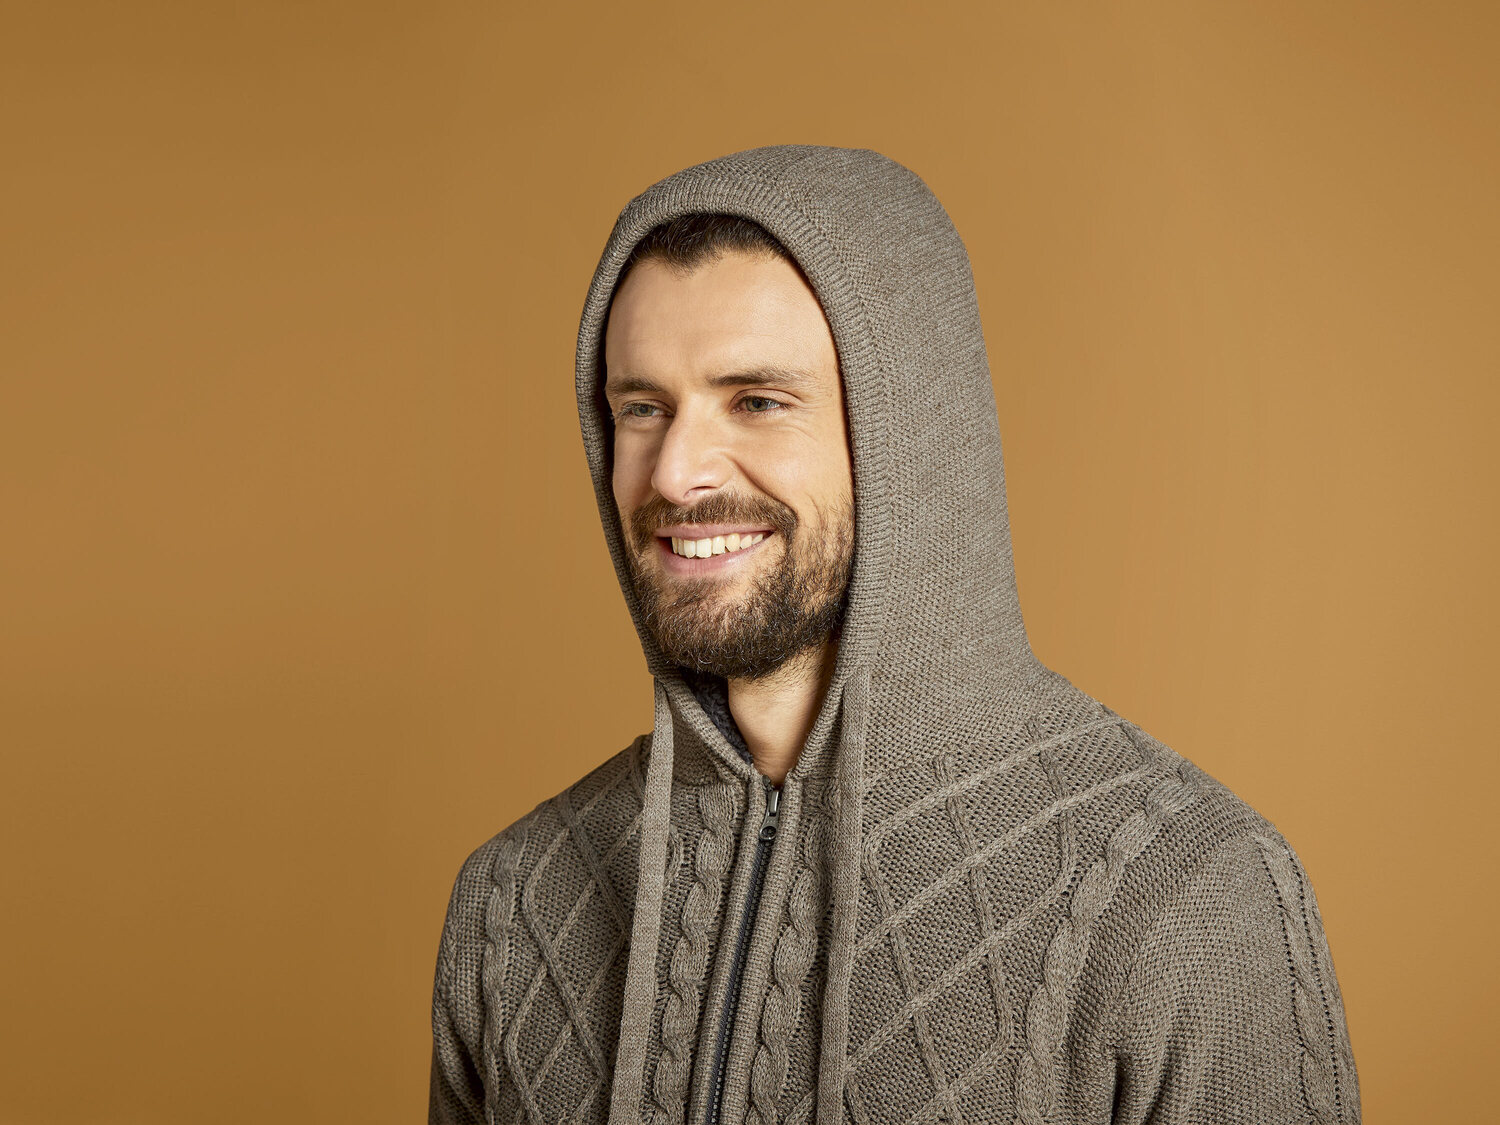 Ocieplany sweter męski z futerkiem Livergy, cena 74,90 PLN 
- rozmiary: M-XL
&nbsp;
Dostępne ...